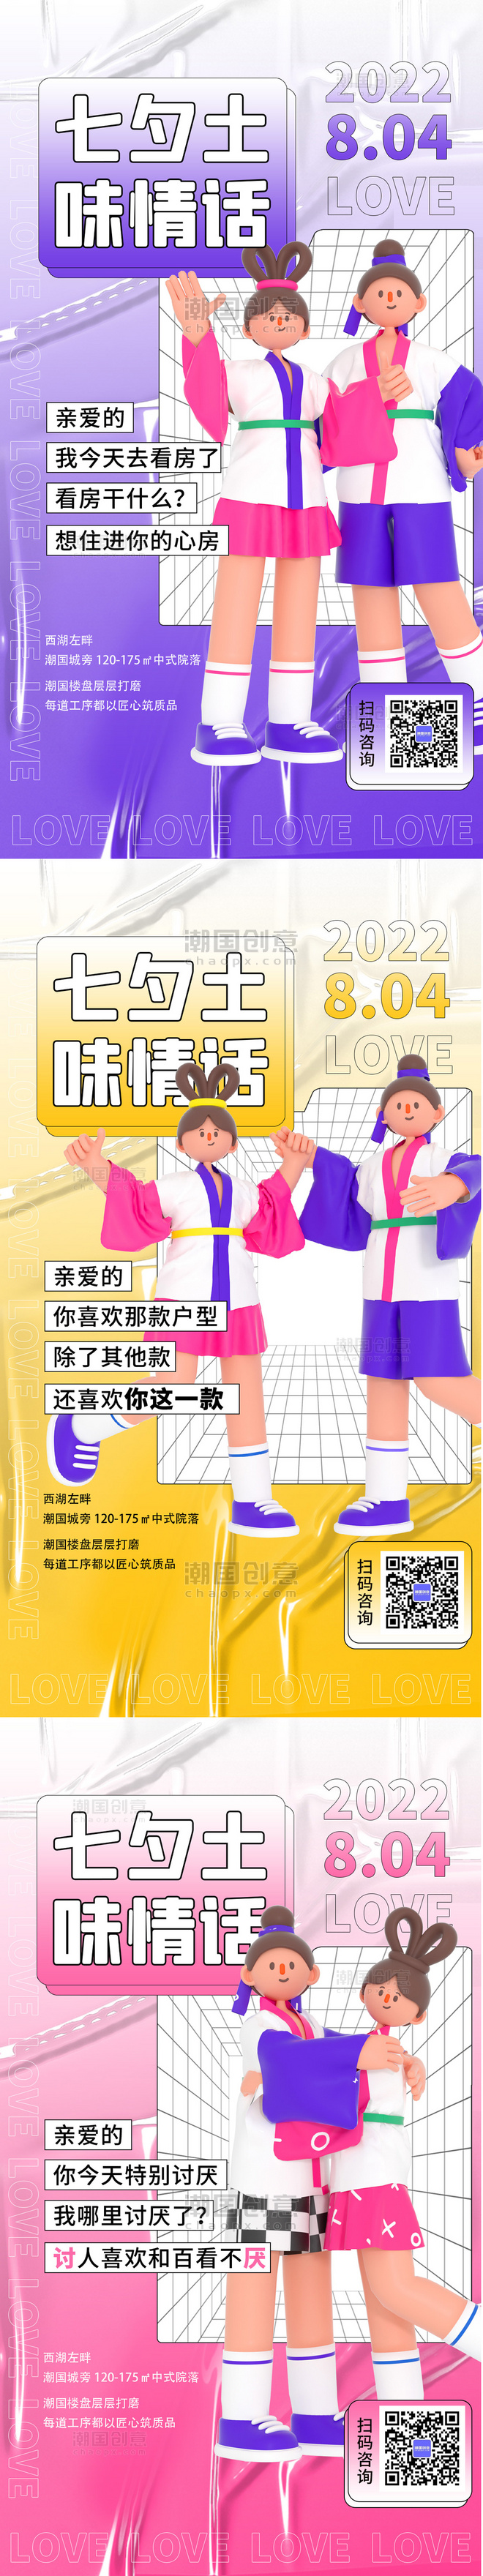 七夕活动土味情话3D系列海报